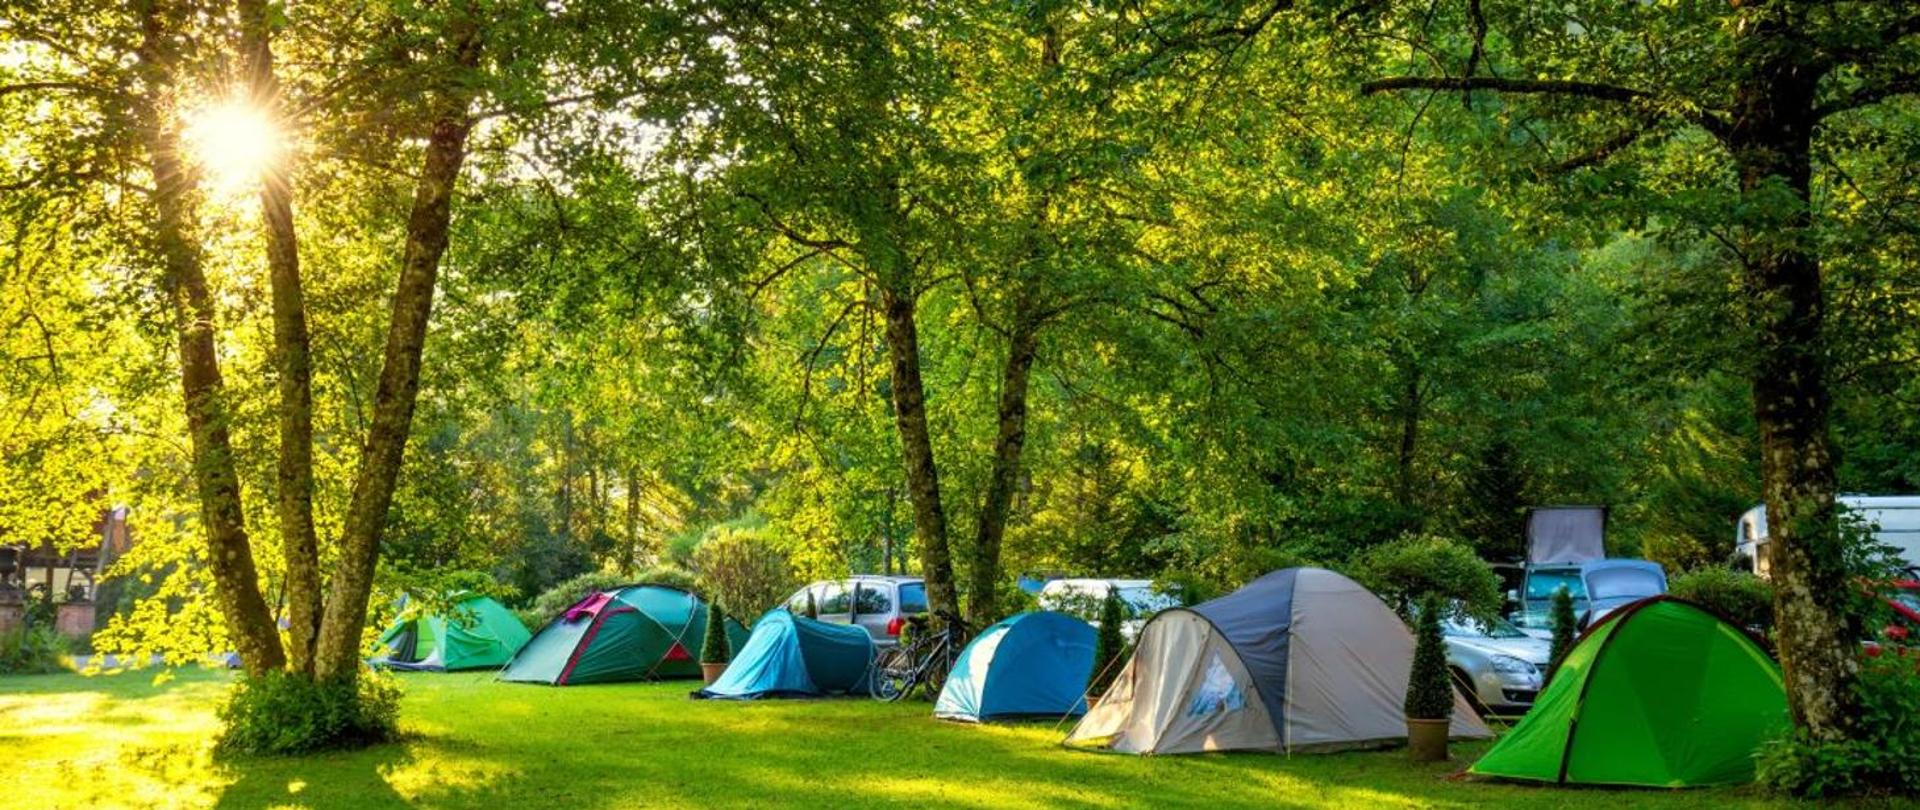 Obóz namiotowy umieszczony w lesie lub parku